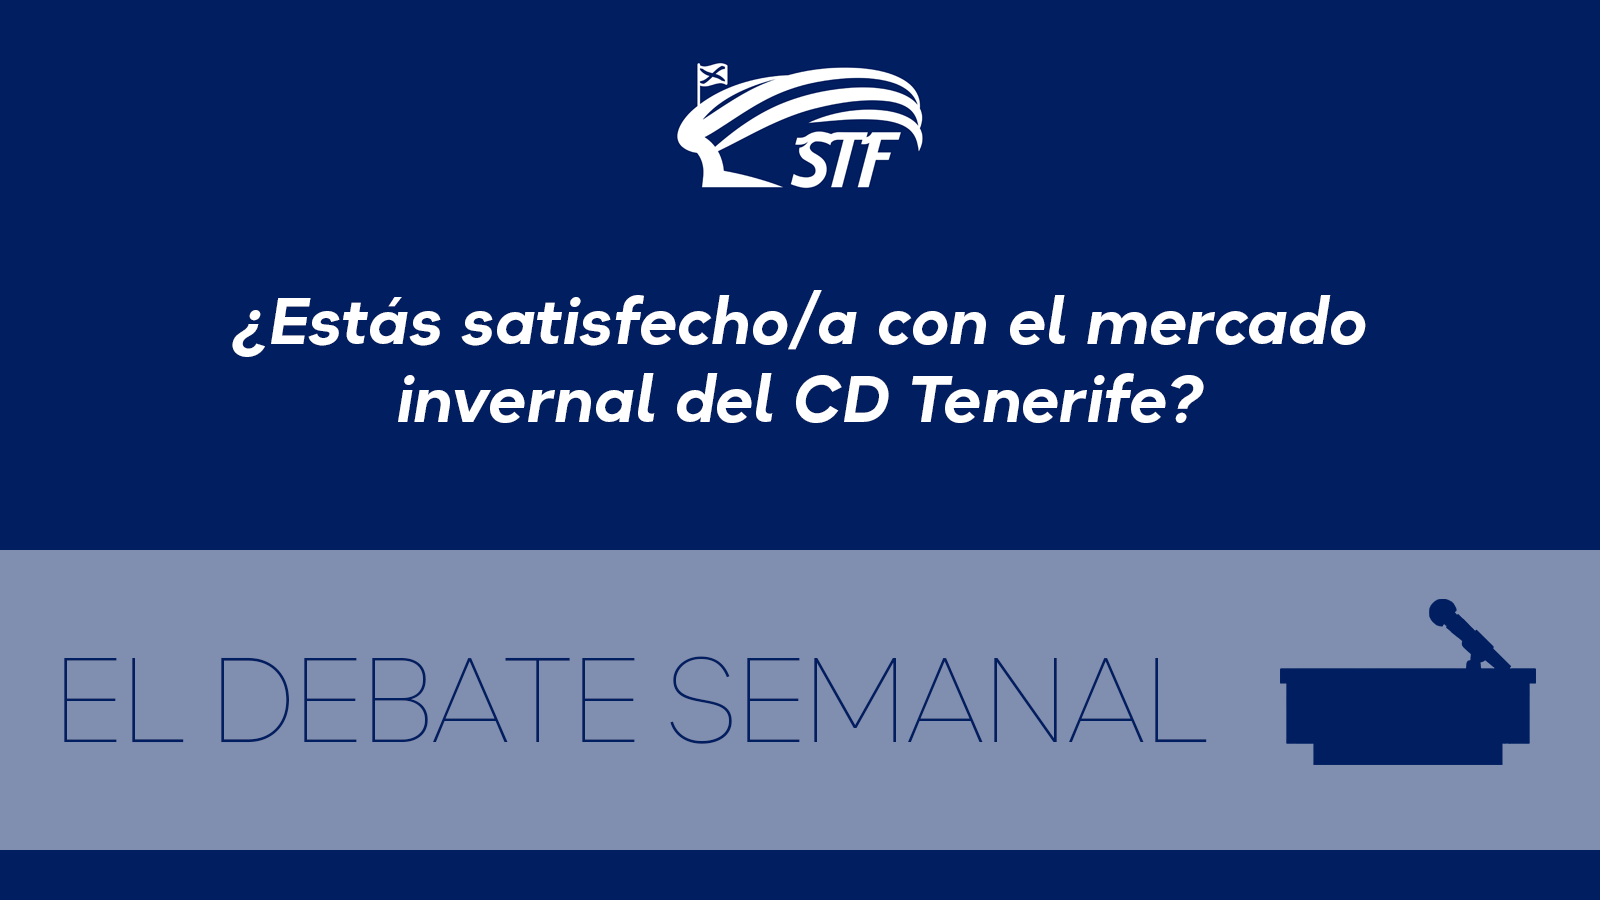 El Debate Semanal: ¿Estás satisfecho/a con el Mercado Invernal del CD Tenerife? El 68,42 por ciento dice no